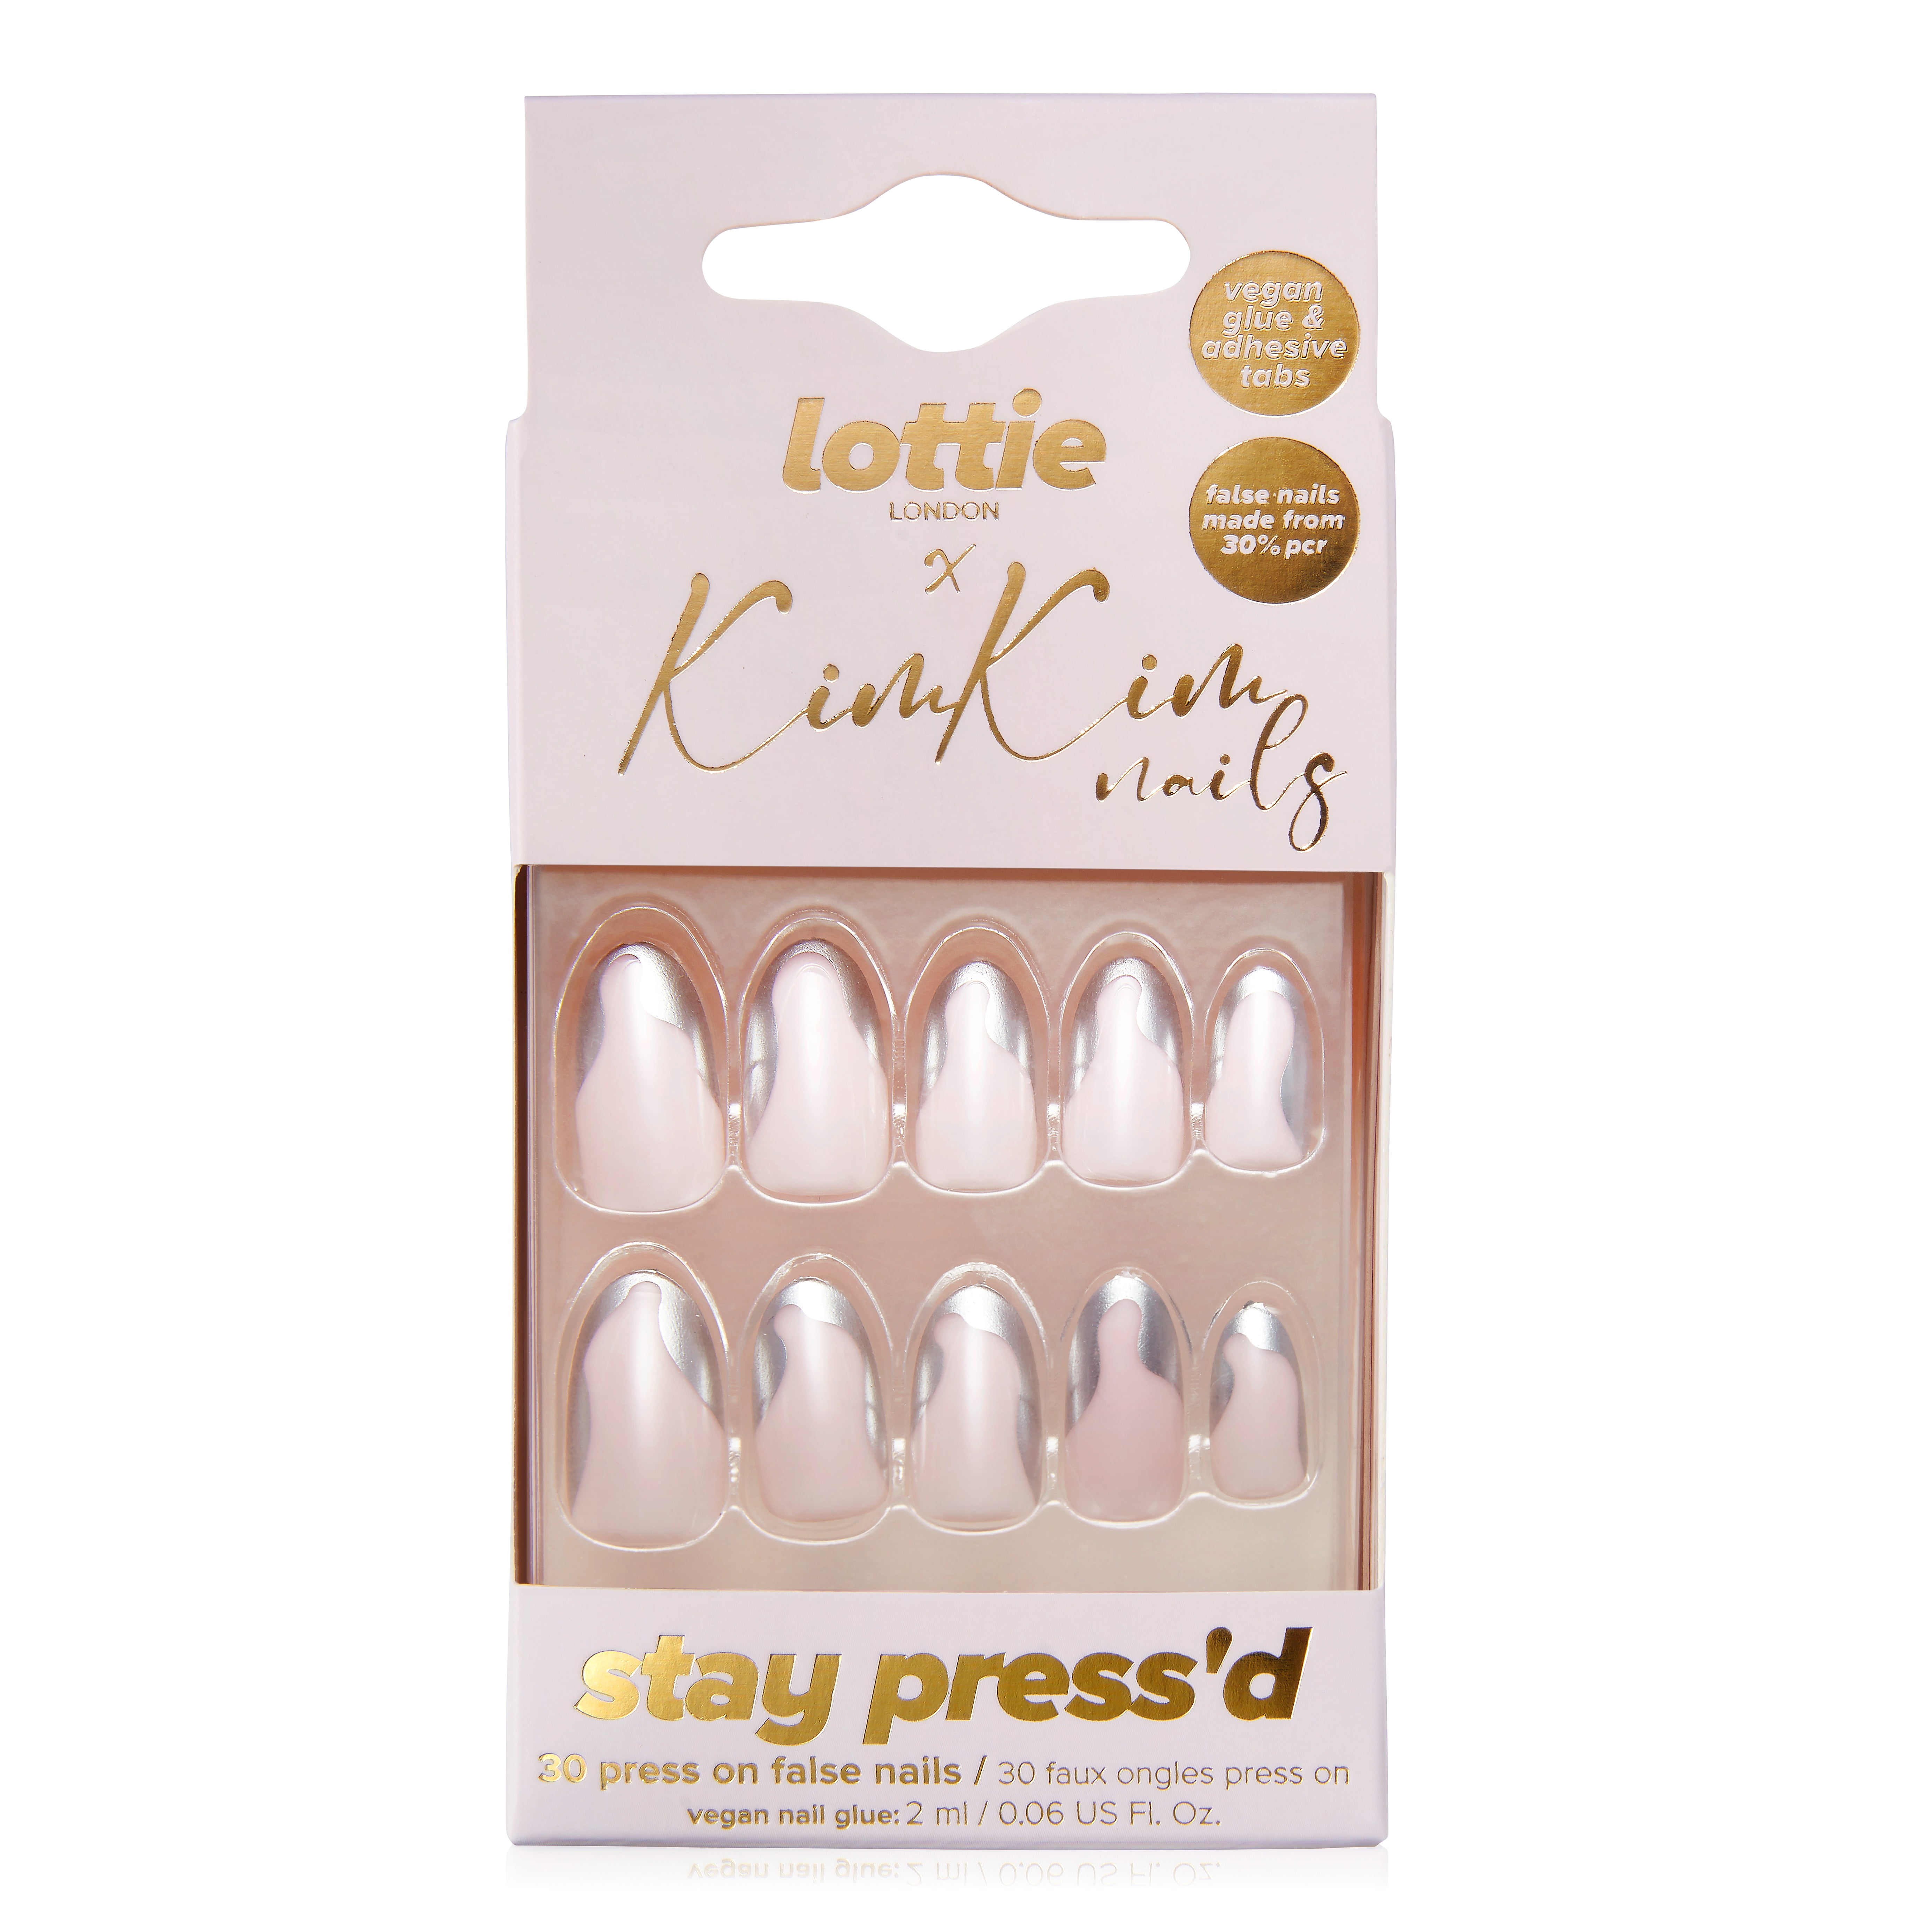 Lottie London x Kim Kim Nails Press On False Nails Set rounded almond shape Silver Chrome Tips 9548a691 6434 434d aa9e faef8c362dd9.11bbac2abcaab4f11ca2e1ba6a25e5a0